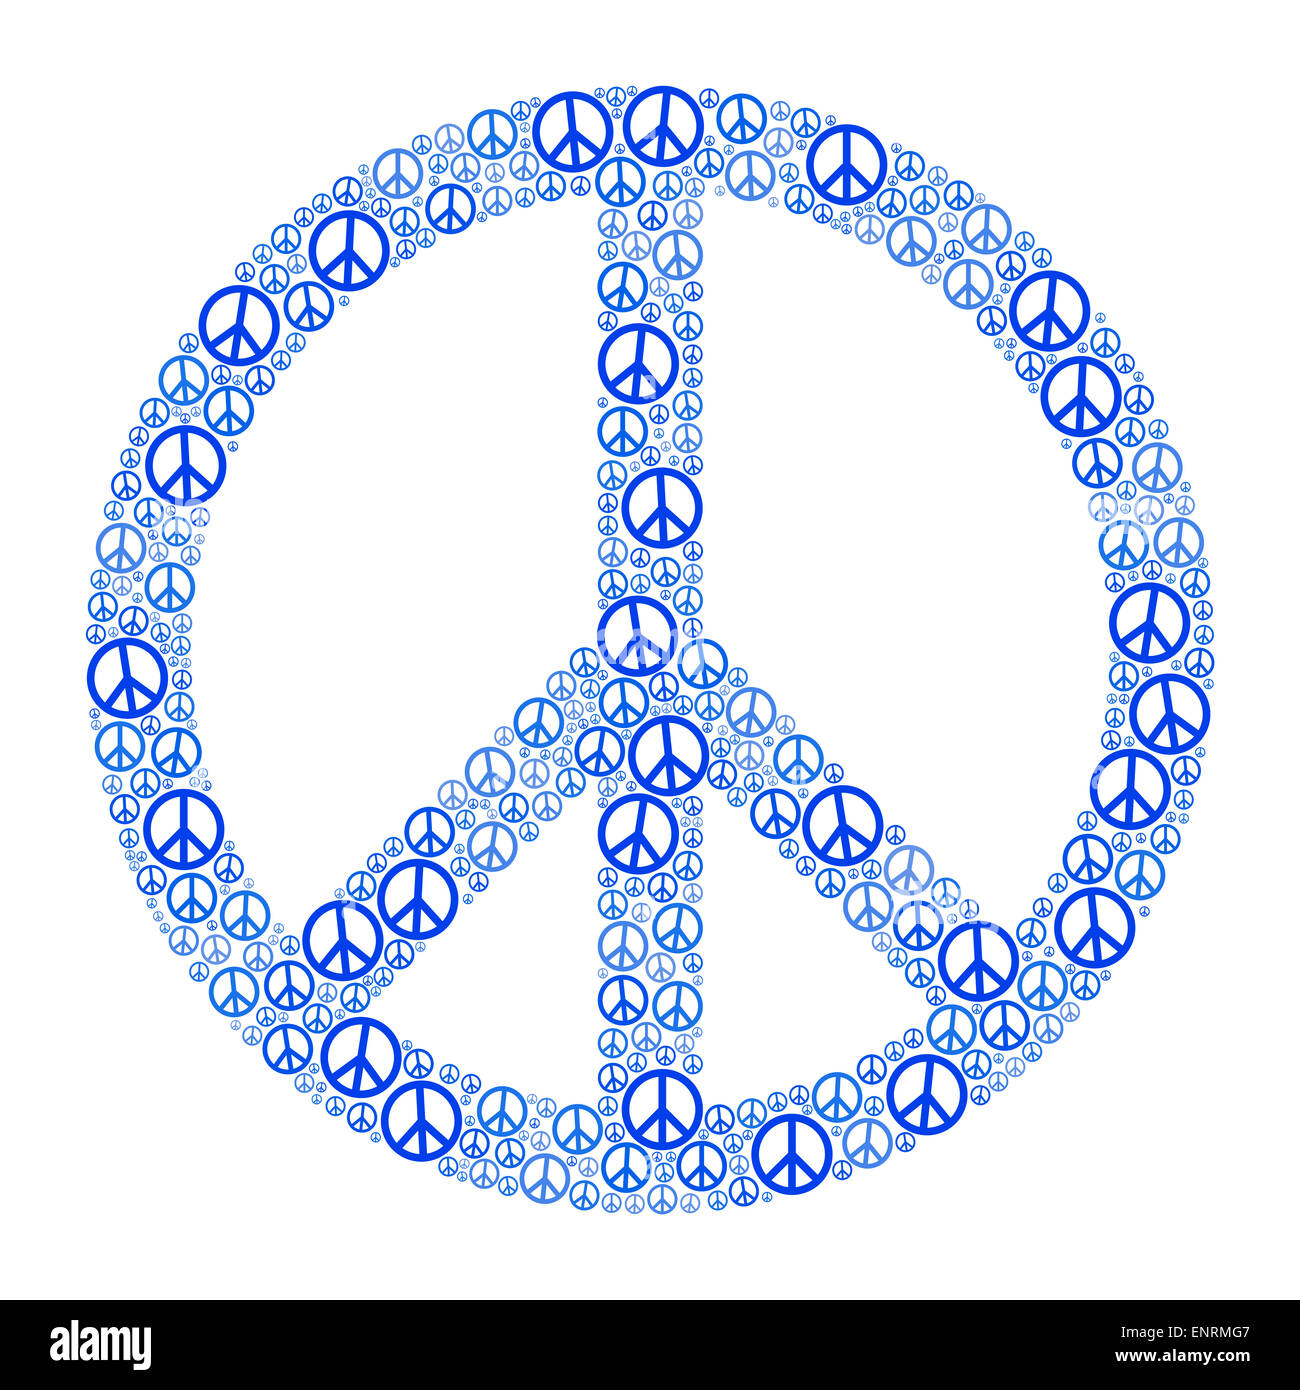 Blu segno di pace formata da molti piccoli simboli di pace. Immagine su sfondo bianco. Foto Stock